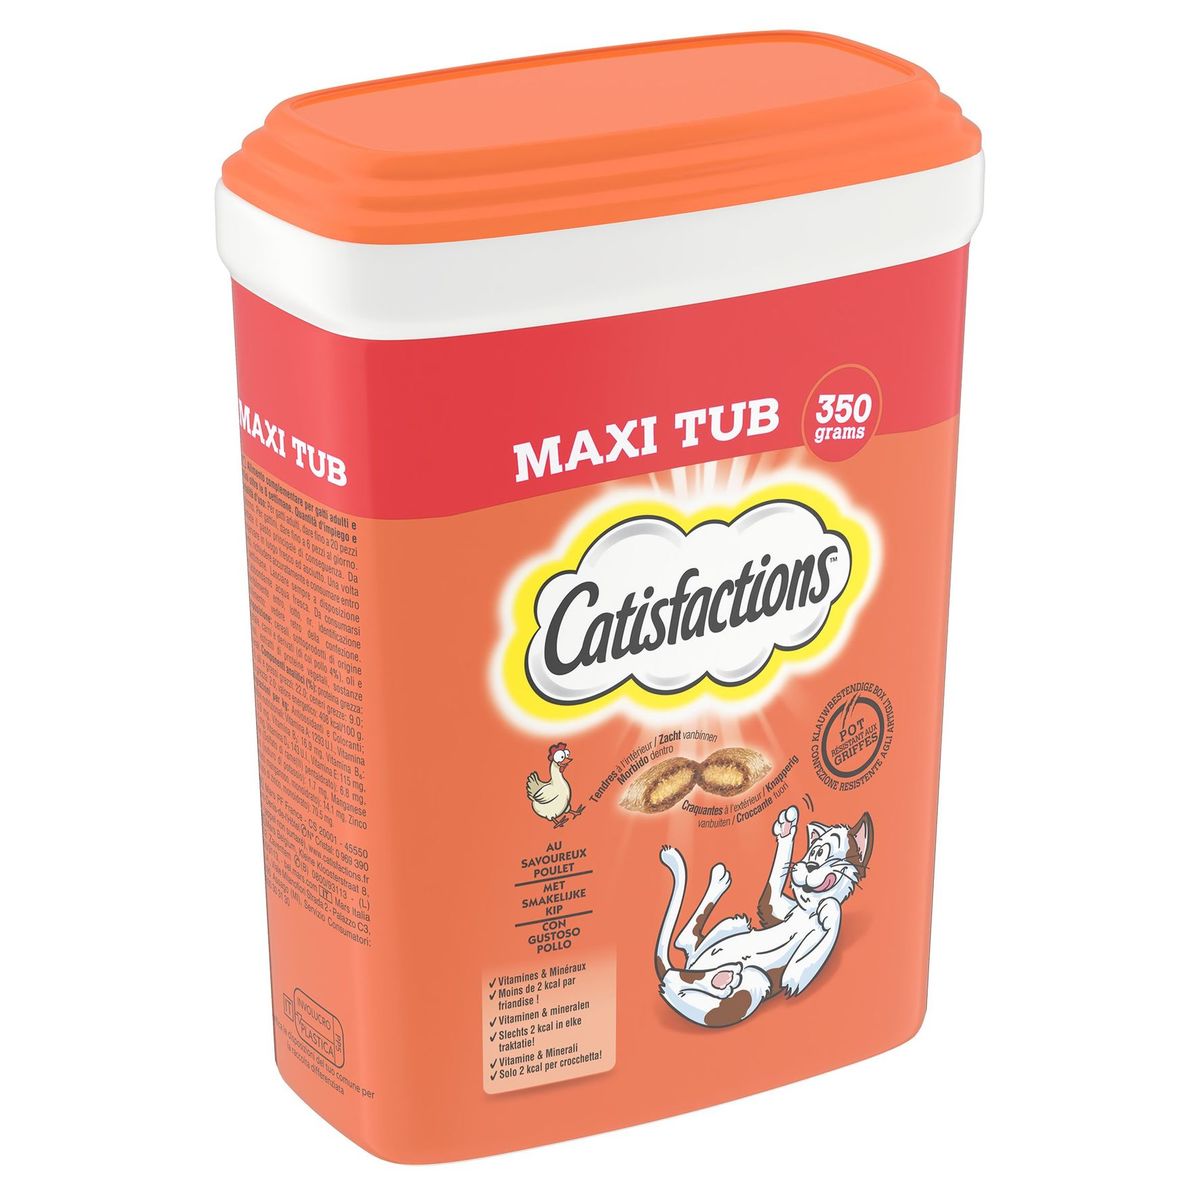 Catisfactions Snack Chat au Savoureux Poulet Maxi Tub 350 g